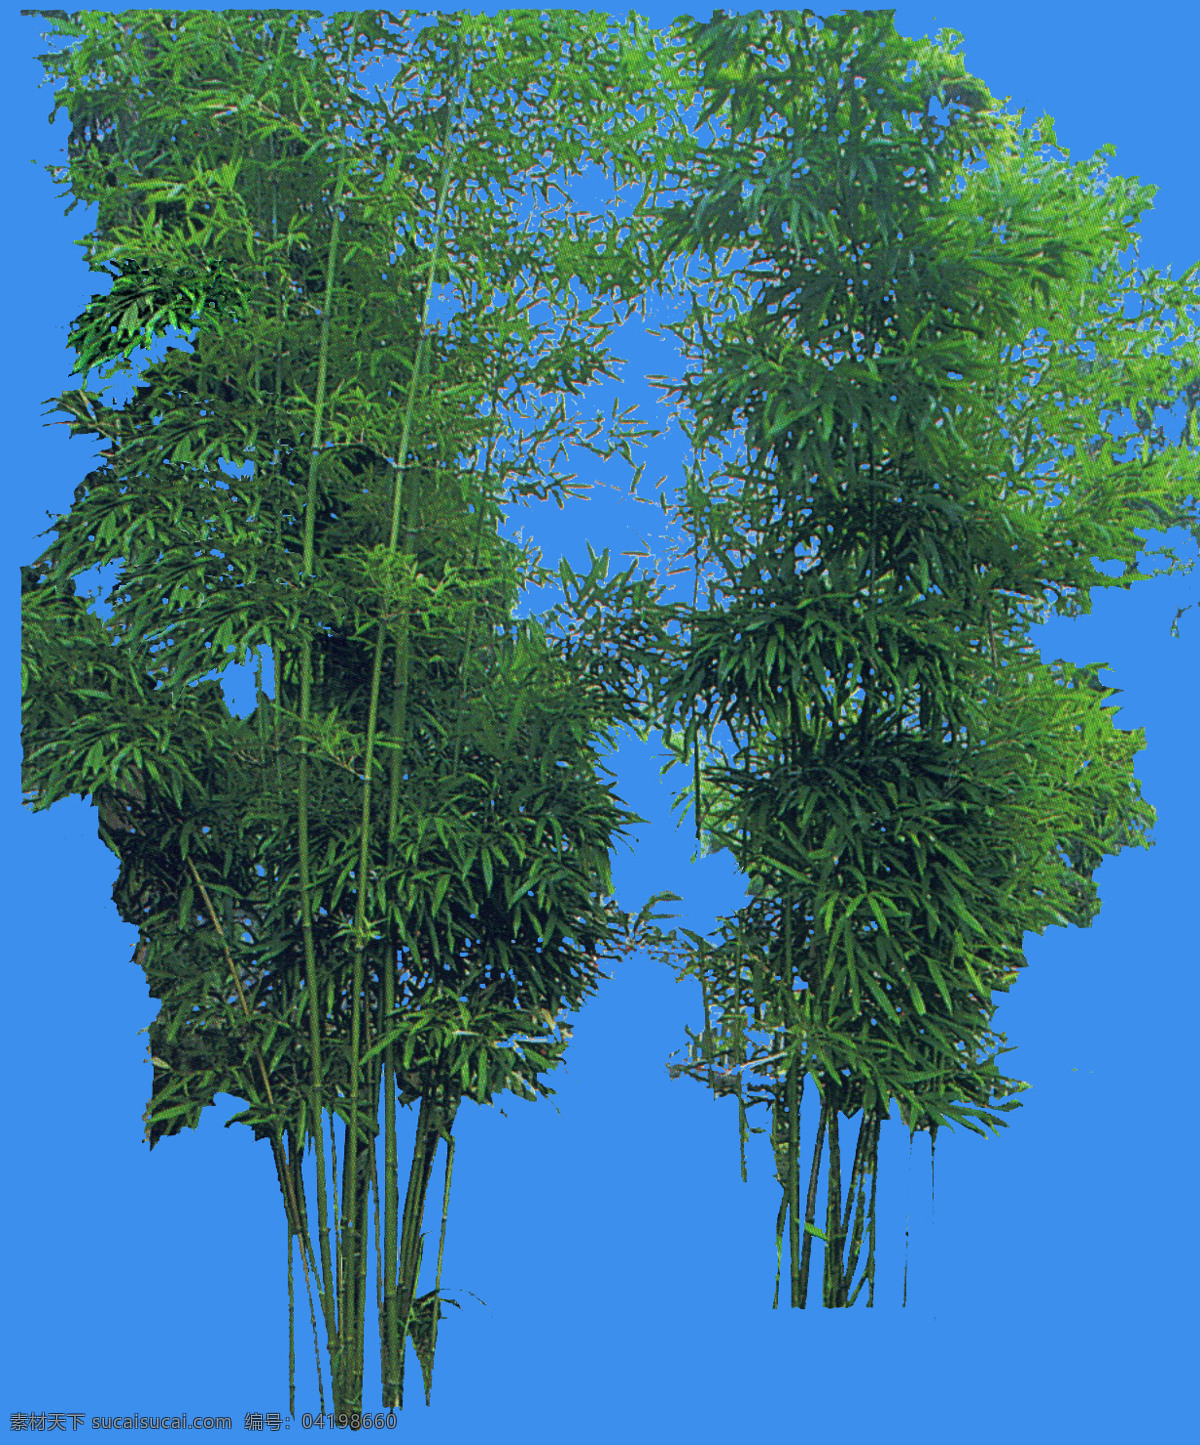 竹子配景图 建筑 效果图 背景 前景 植物 ps 环境设计 园林设计